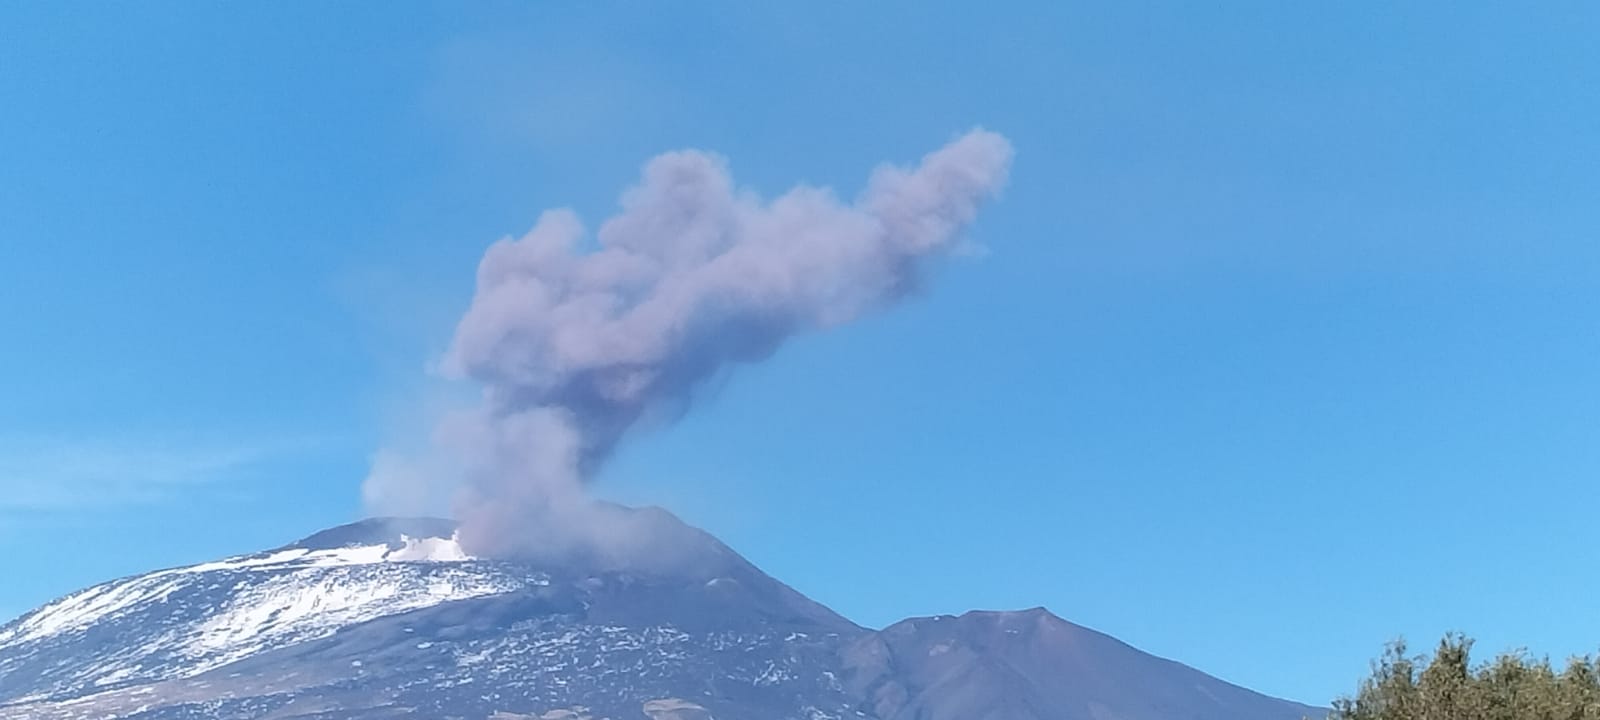 Etna, ricaduta di cenere in corso: tremore vulcanico basso, la situazione